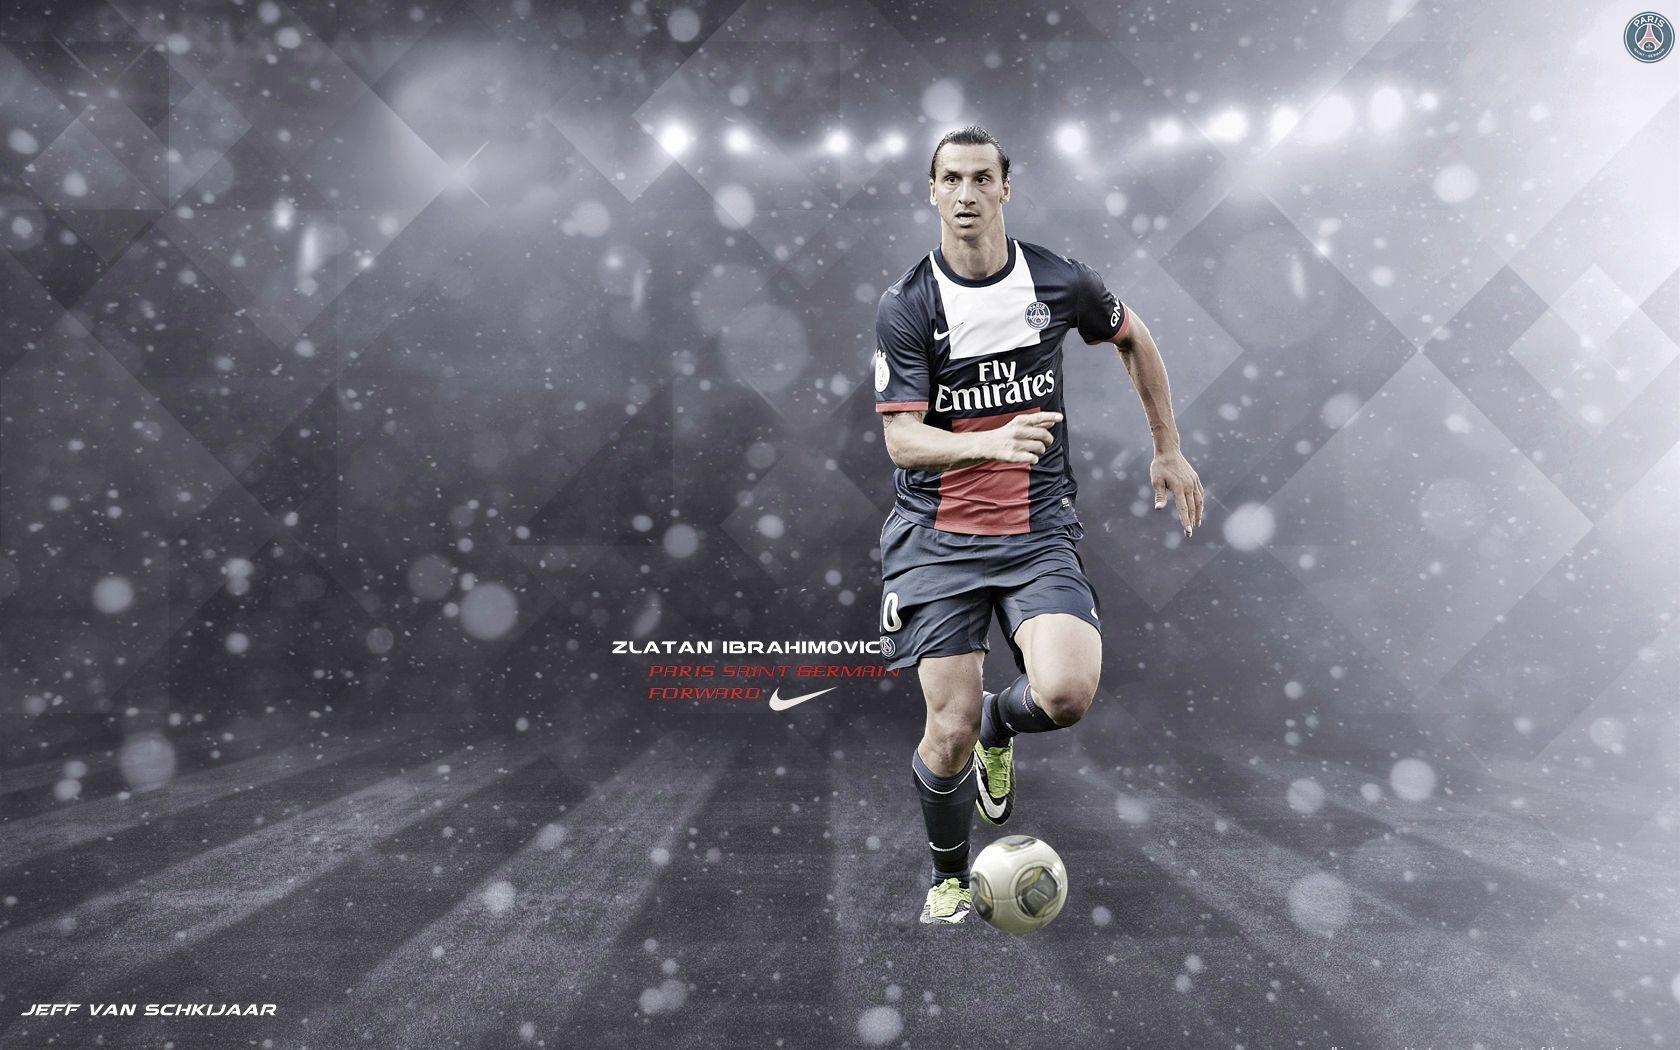 image For > Zlatan Ibrahimovic Wallpaper 2014